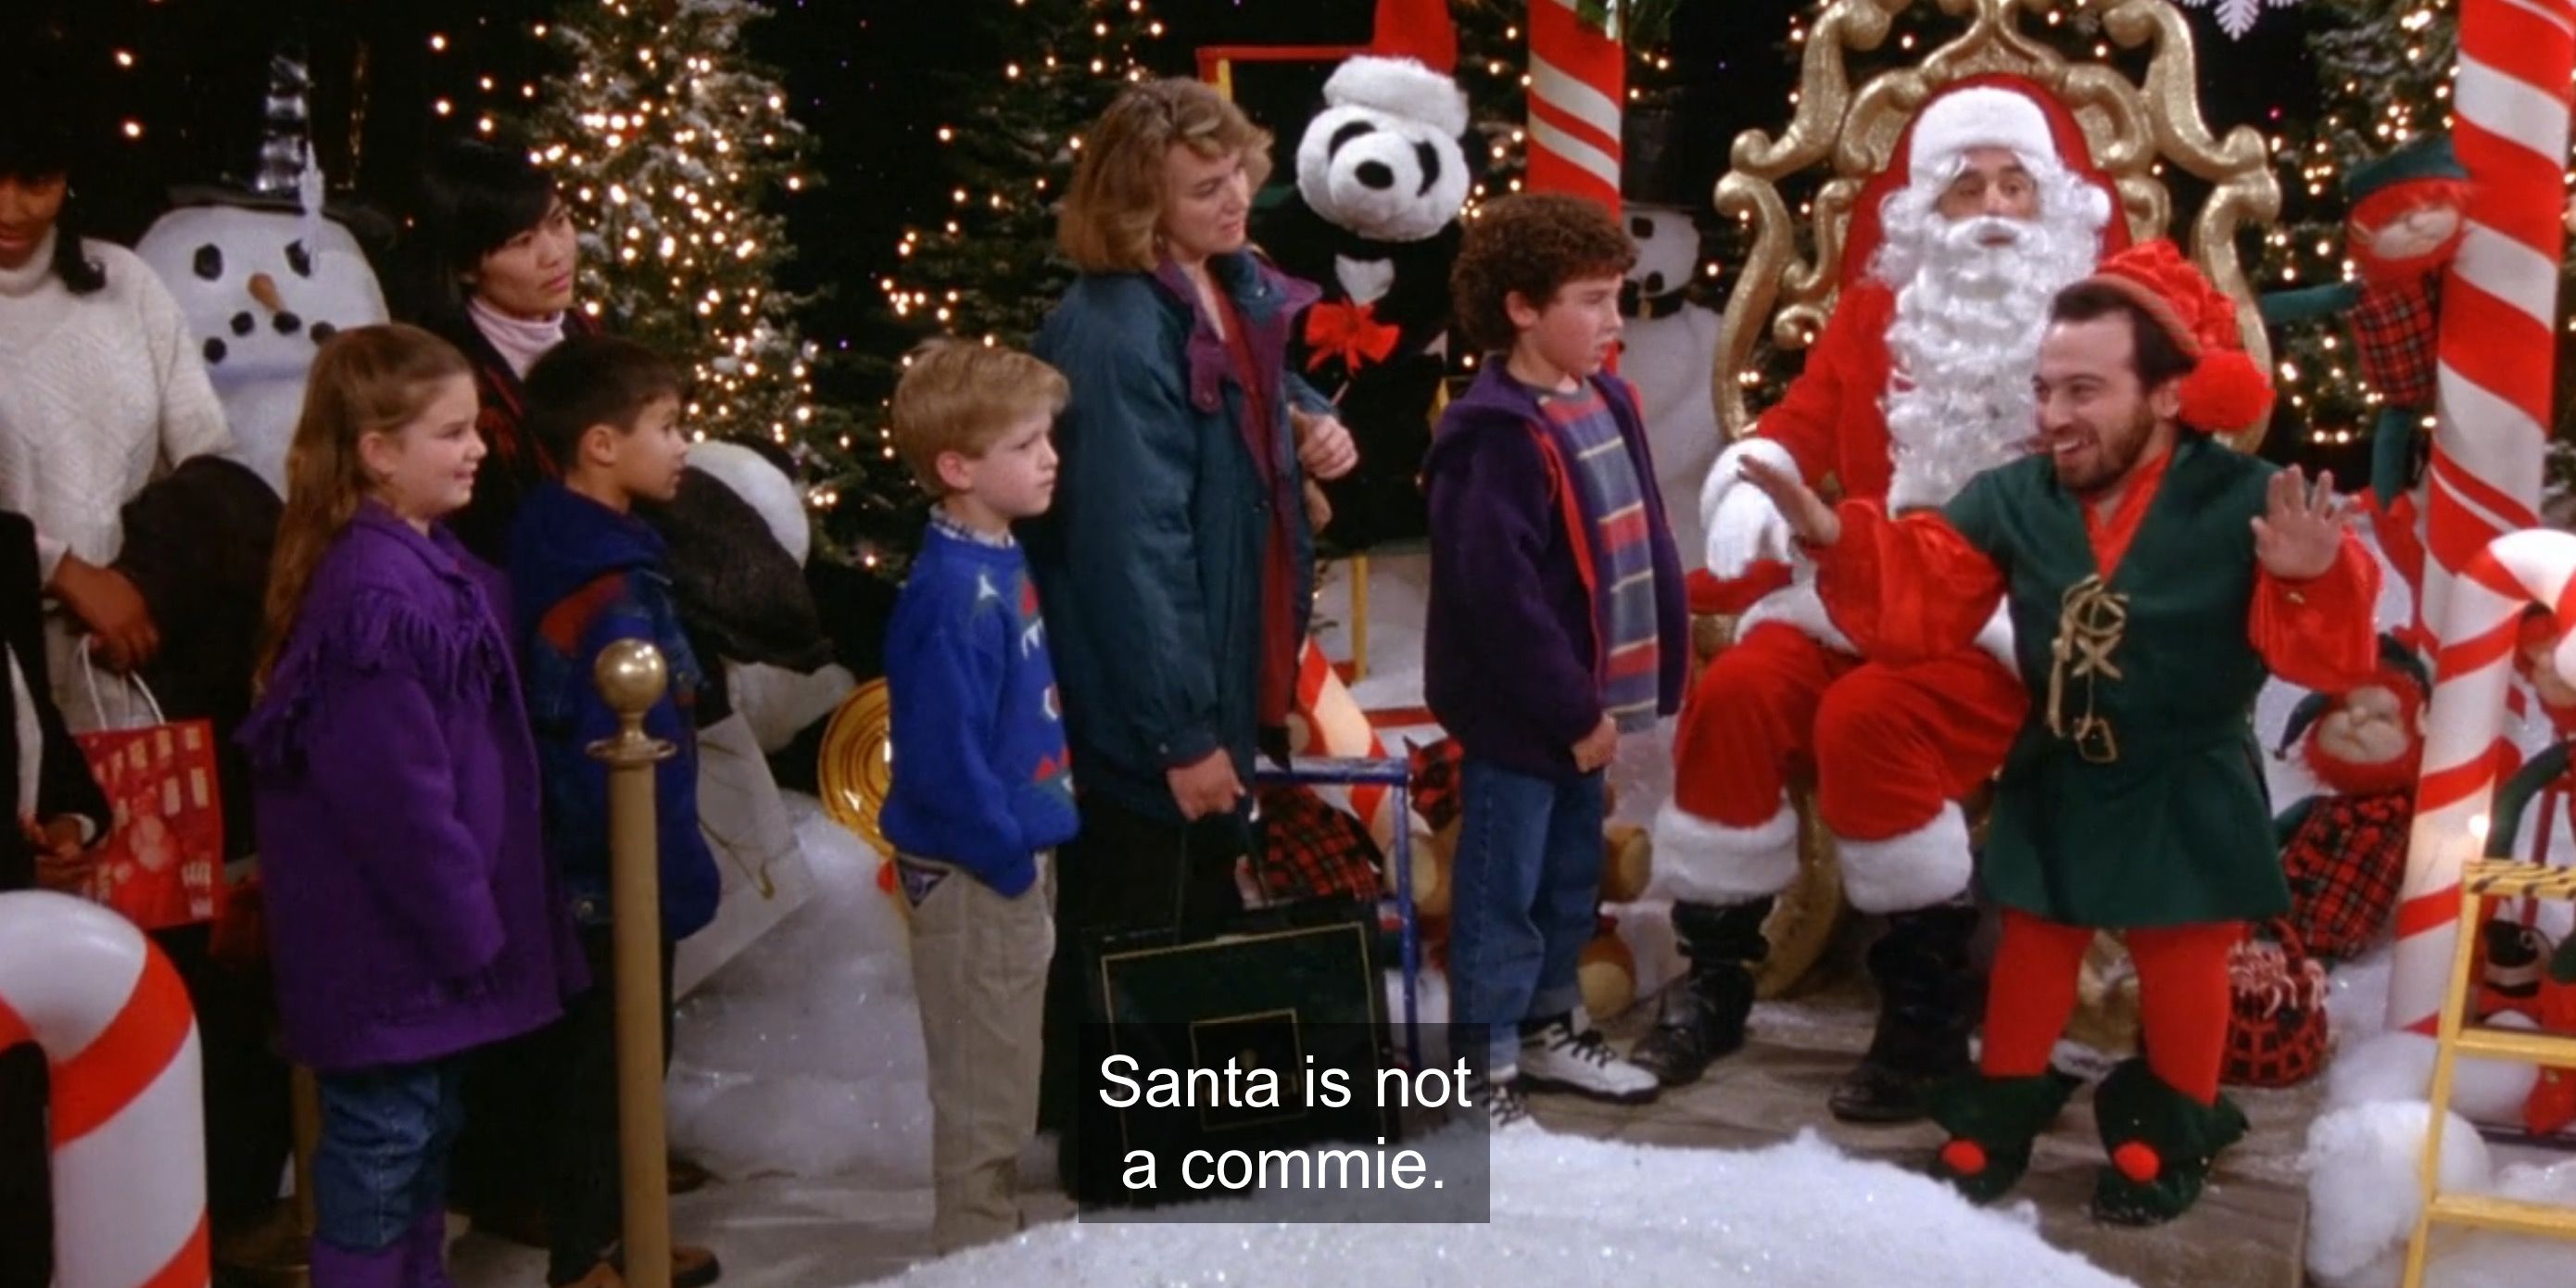 Kramer trying to spread Communist propaganda as Santa